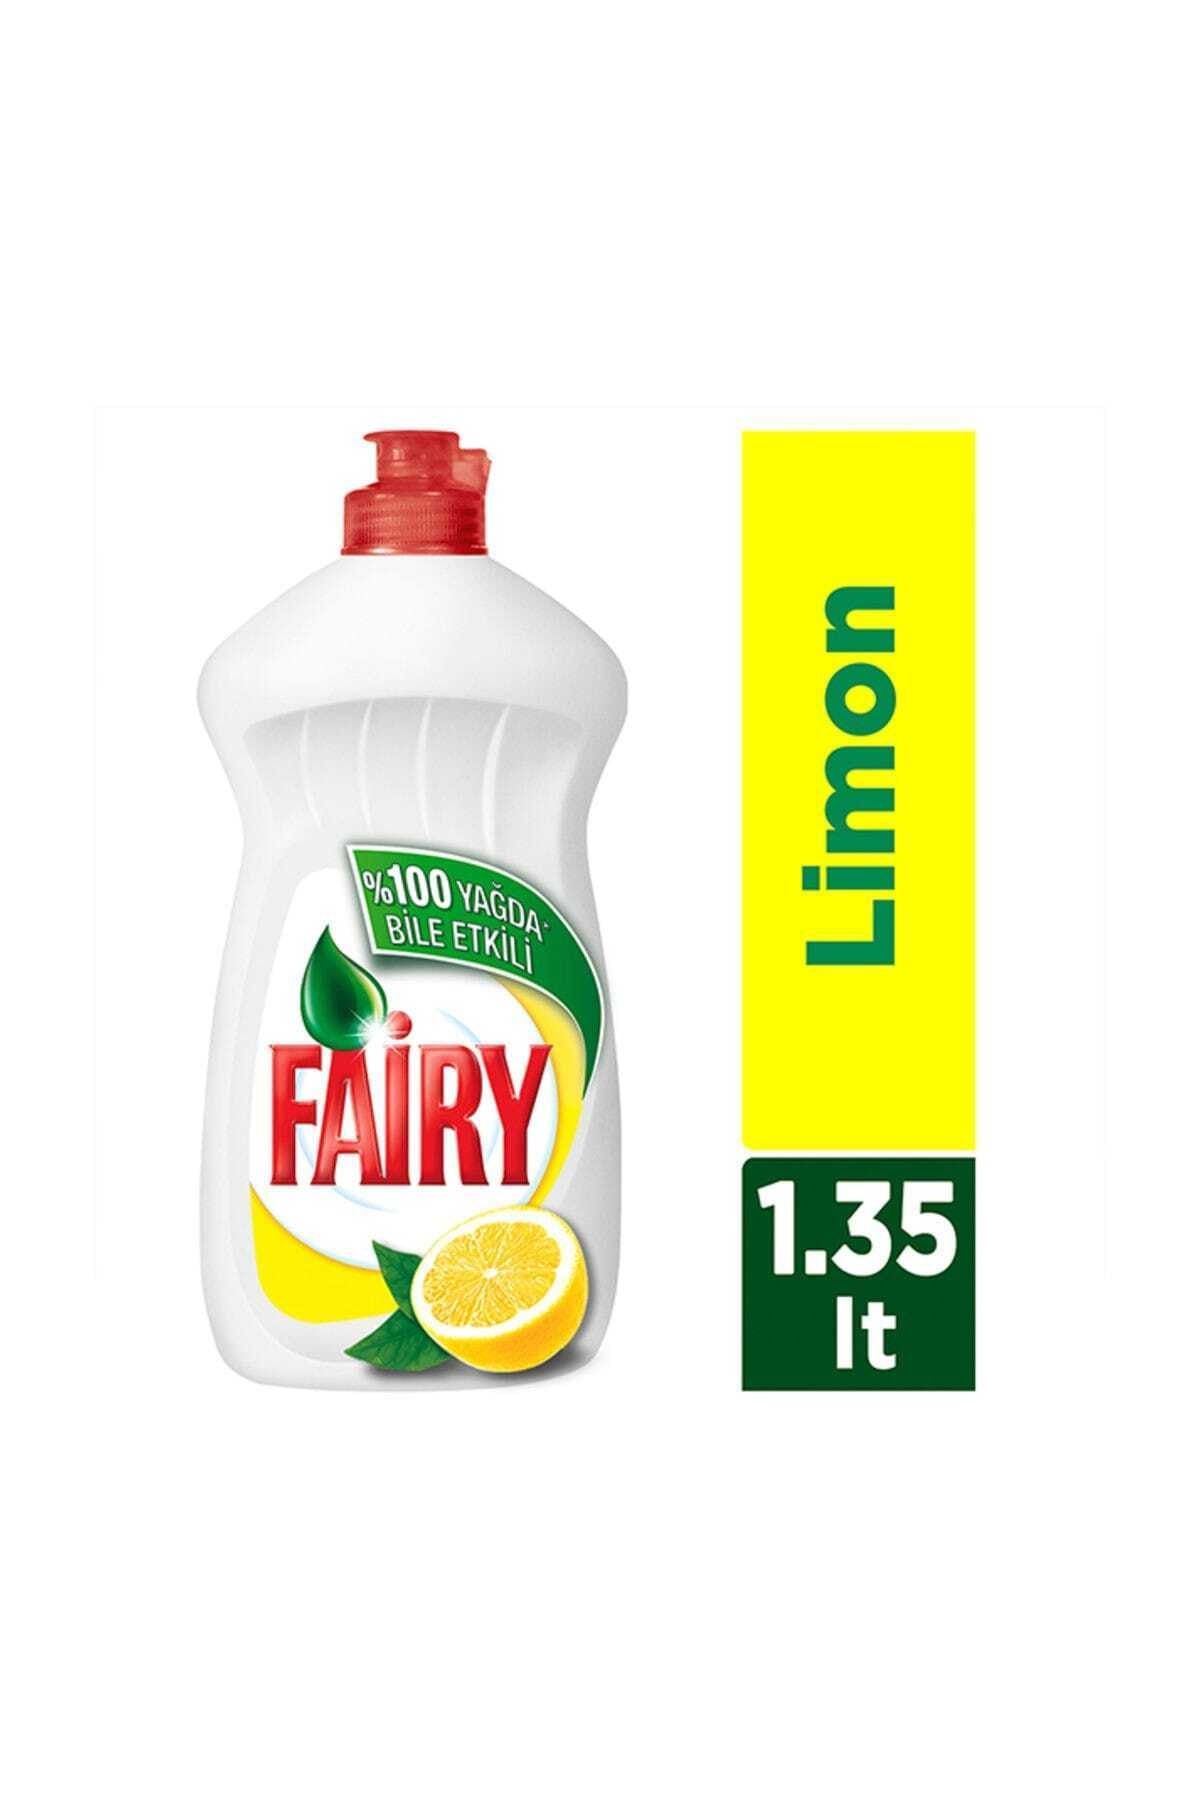 Fairy Sıvı Bulaşık Deterjanı ltimon 1350 ml